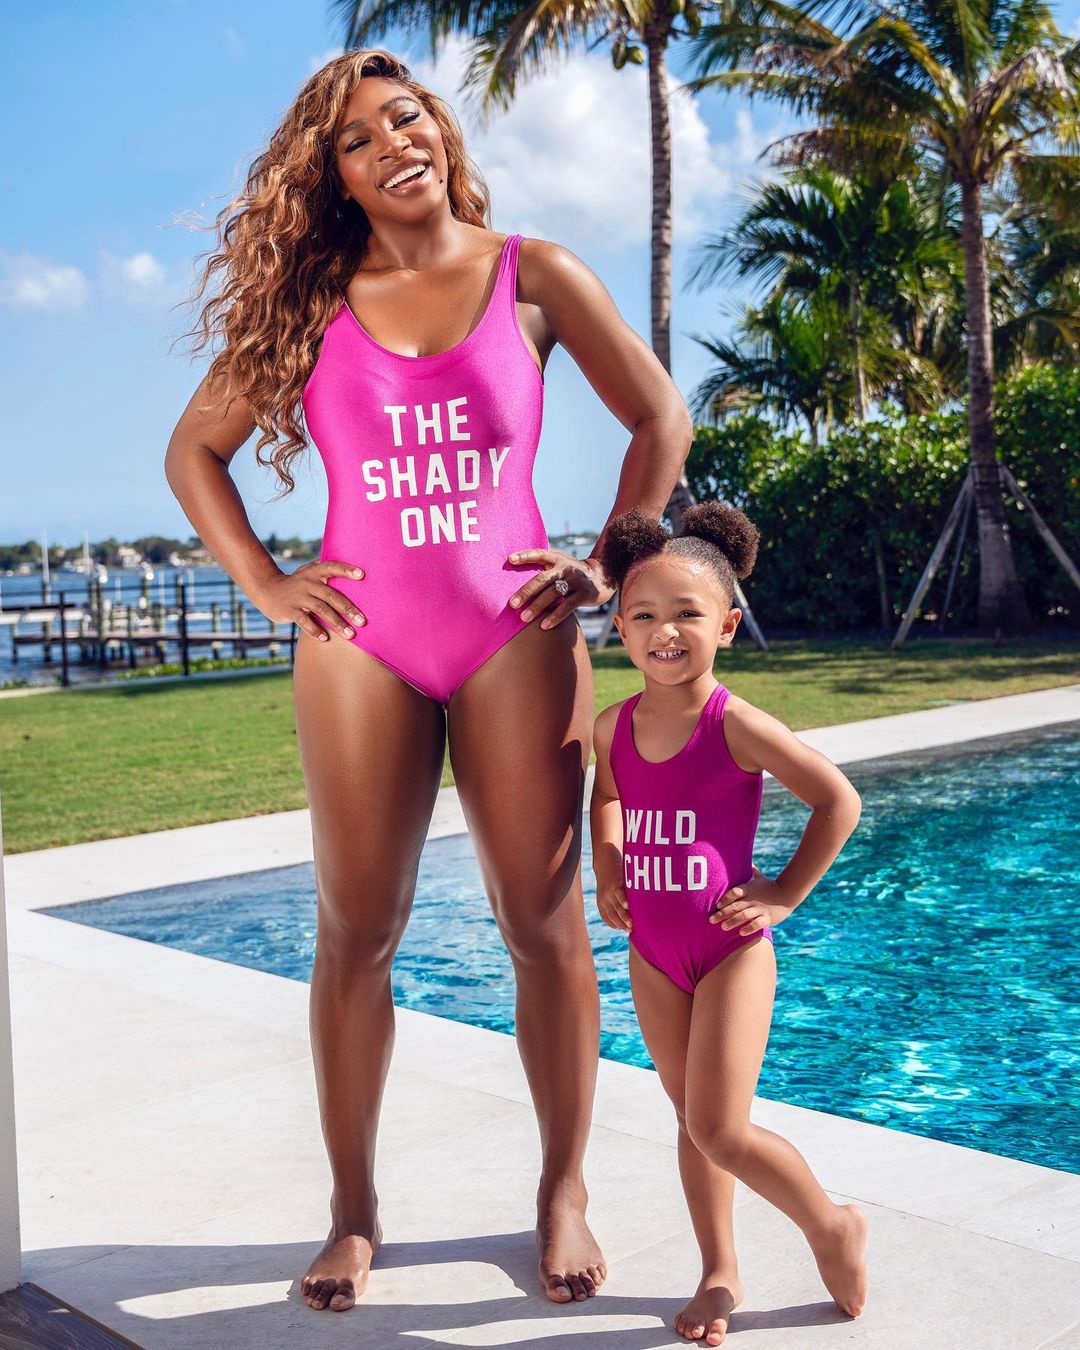 Family look: Серена Вільямс з донькою приміряли яскраві купальники